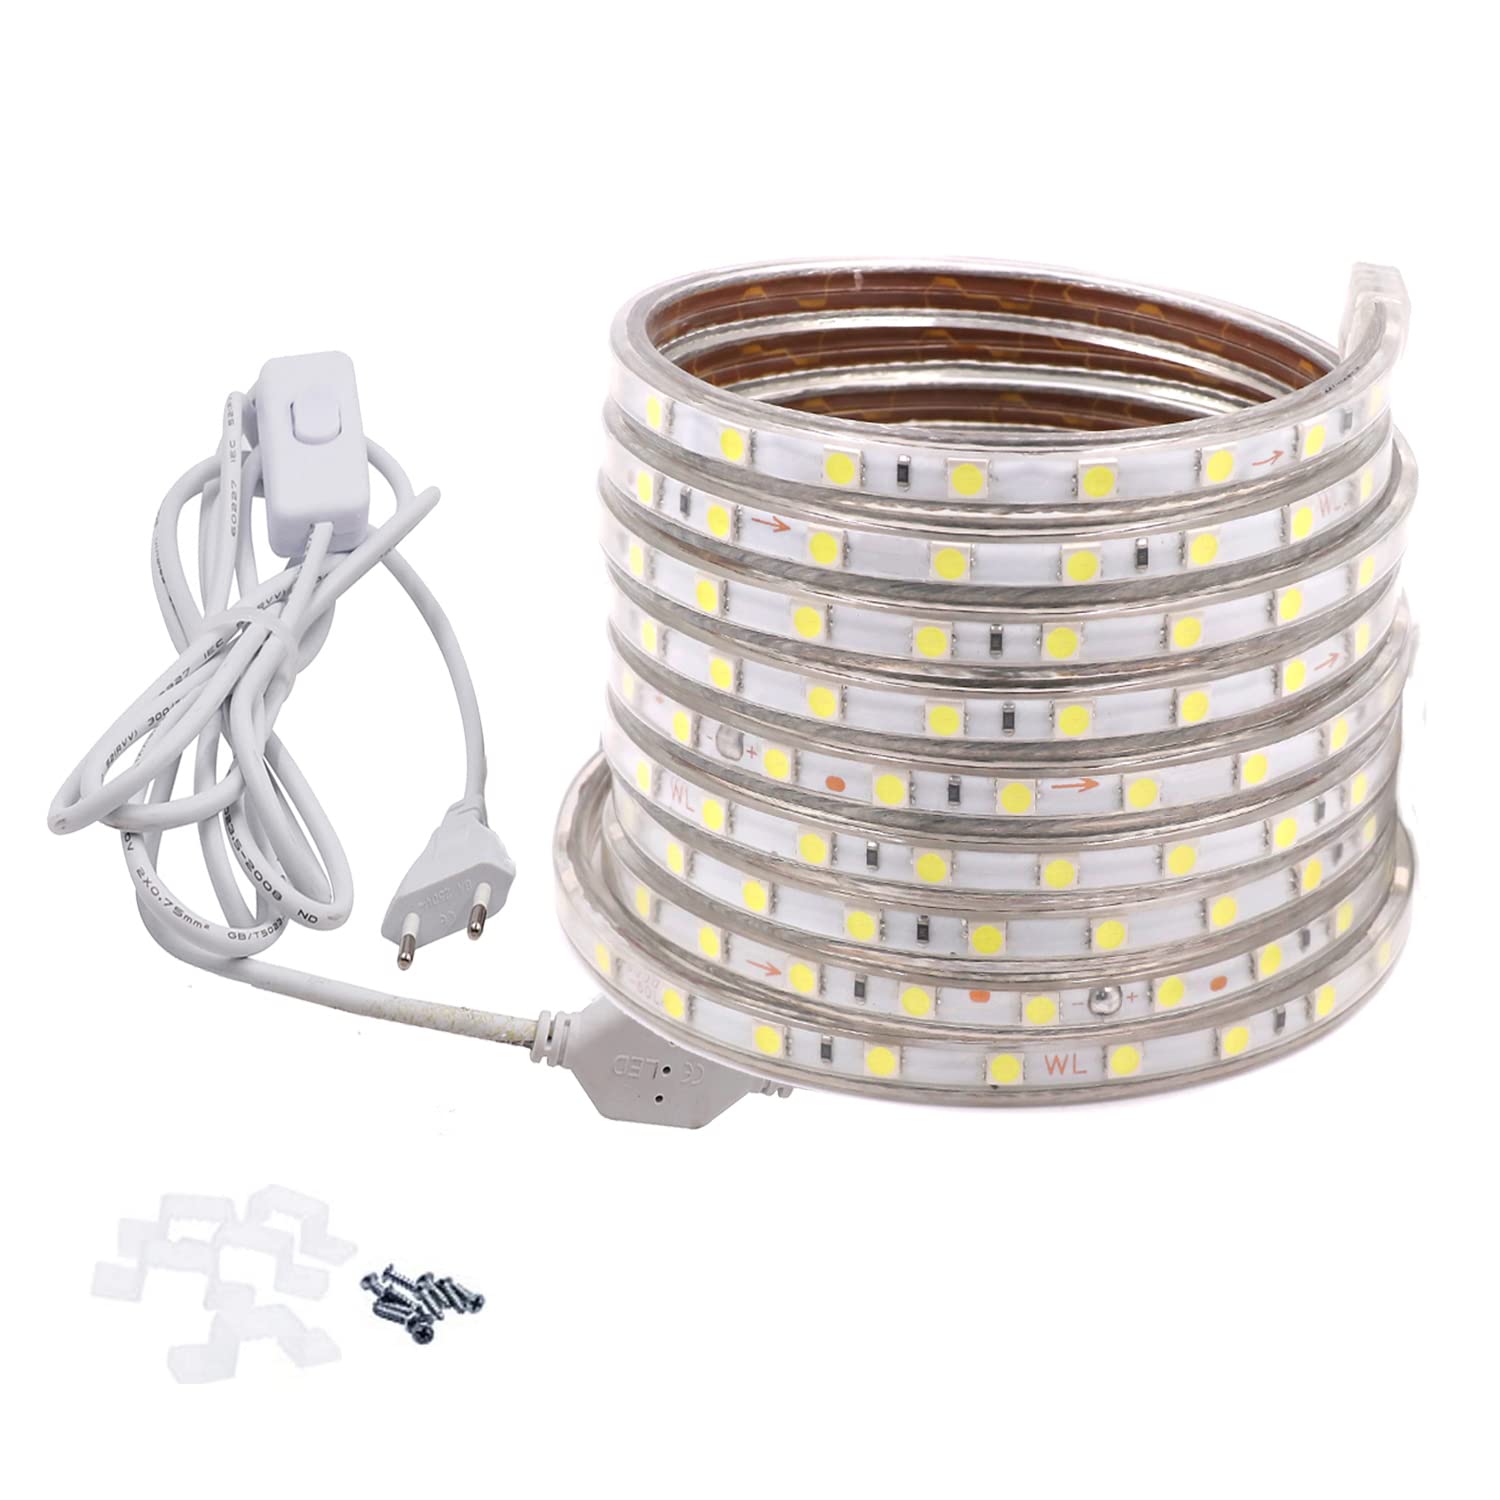 FOLGEMIR 12m Kalt Weiß LED Band mit Schalter, 220V 230V Lichtleiste, 60 Leds/m Strip, IP65 Lichtschlauch, milde Hintergrundbeleuchtung